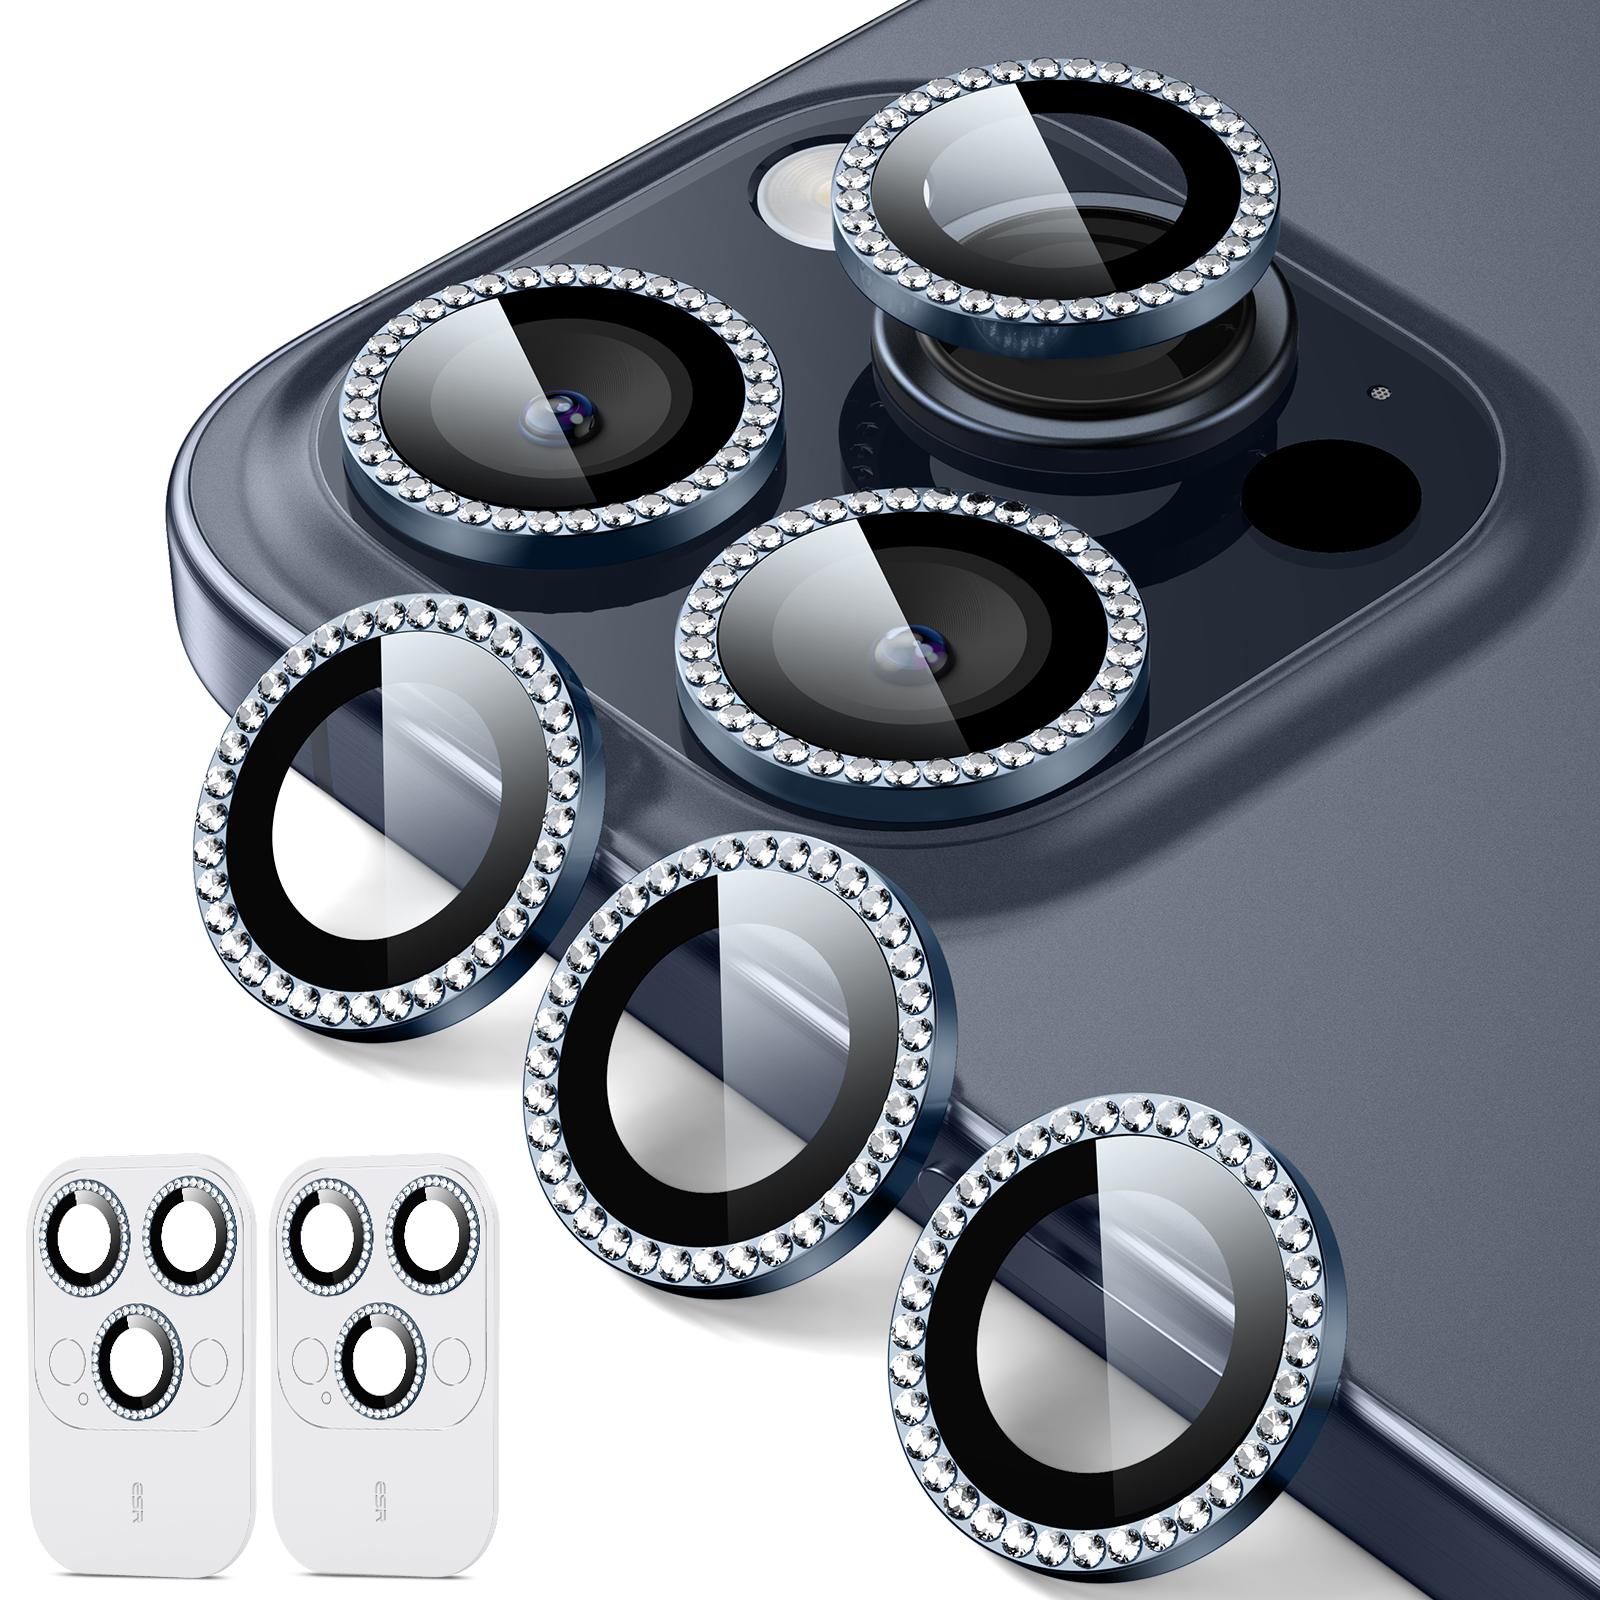 Protecteurs d'objectif en Verre Trempé pour iPhone 15 Pro/15 Pro Max